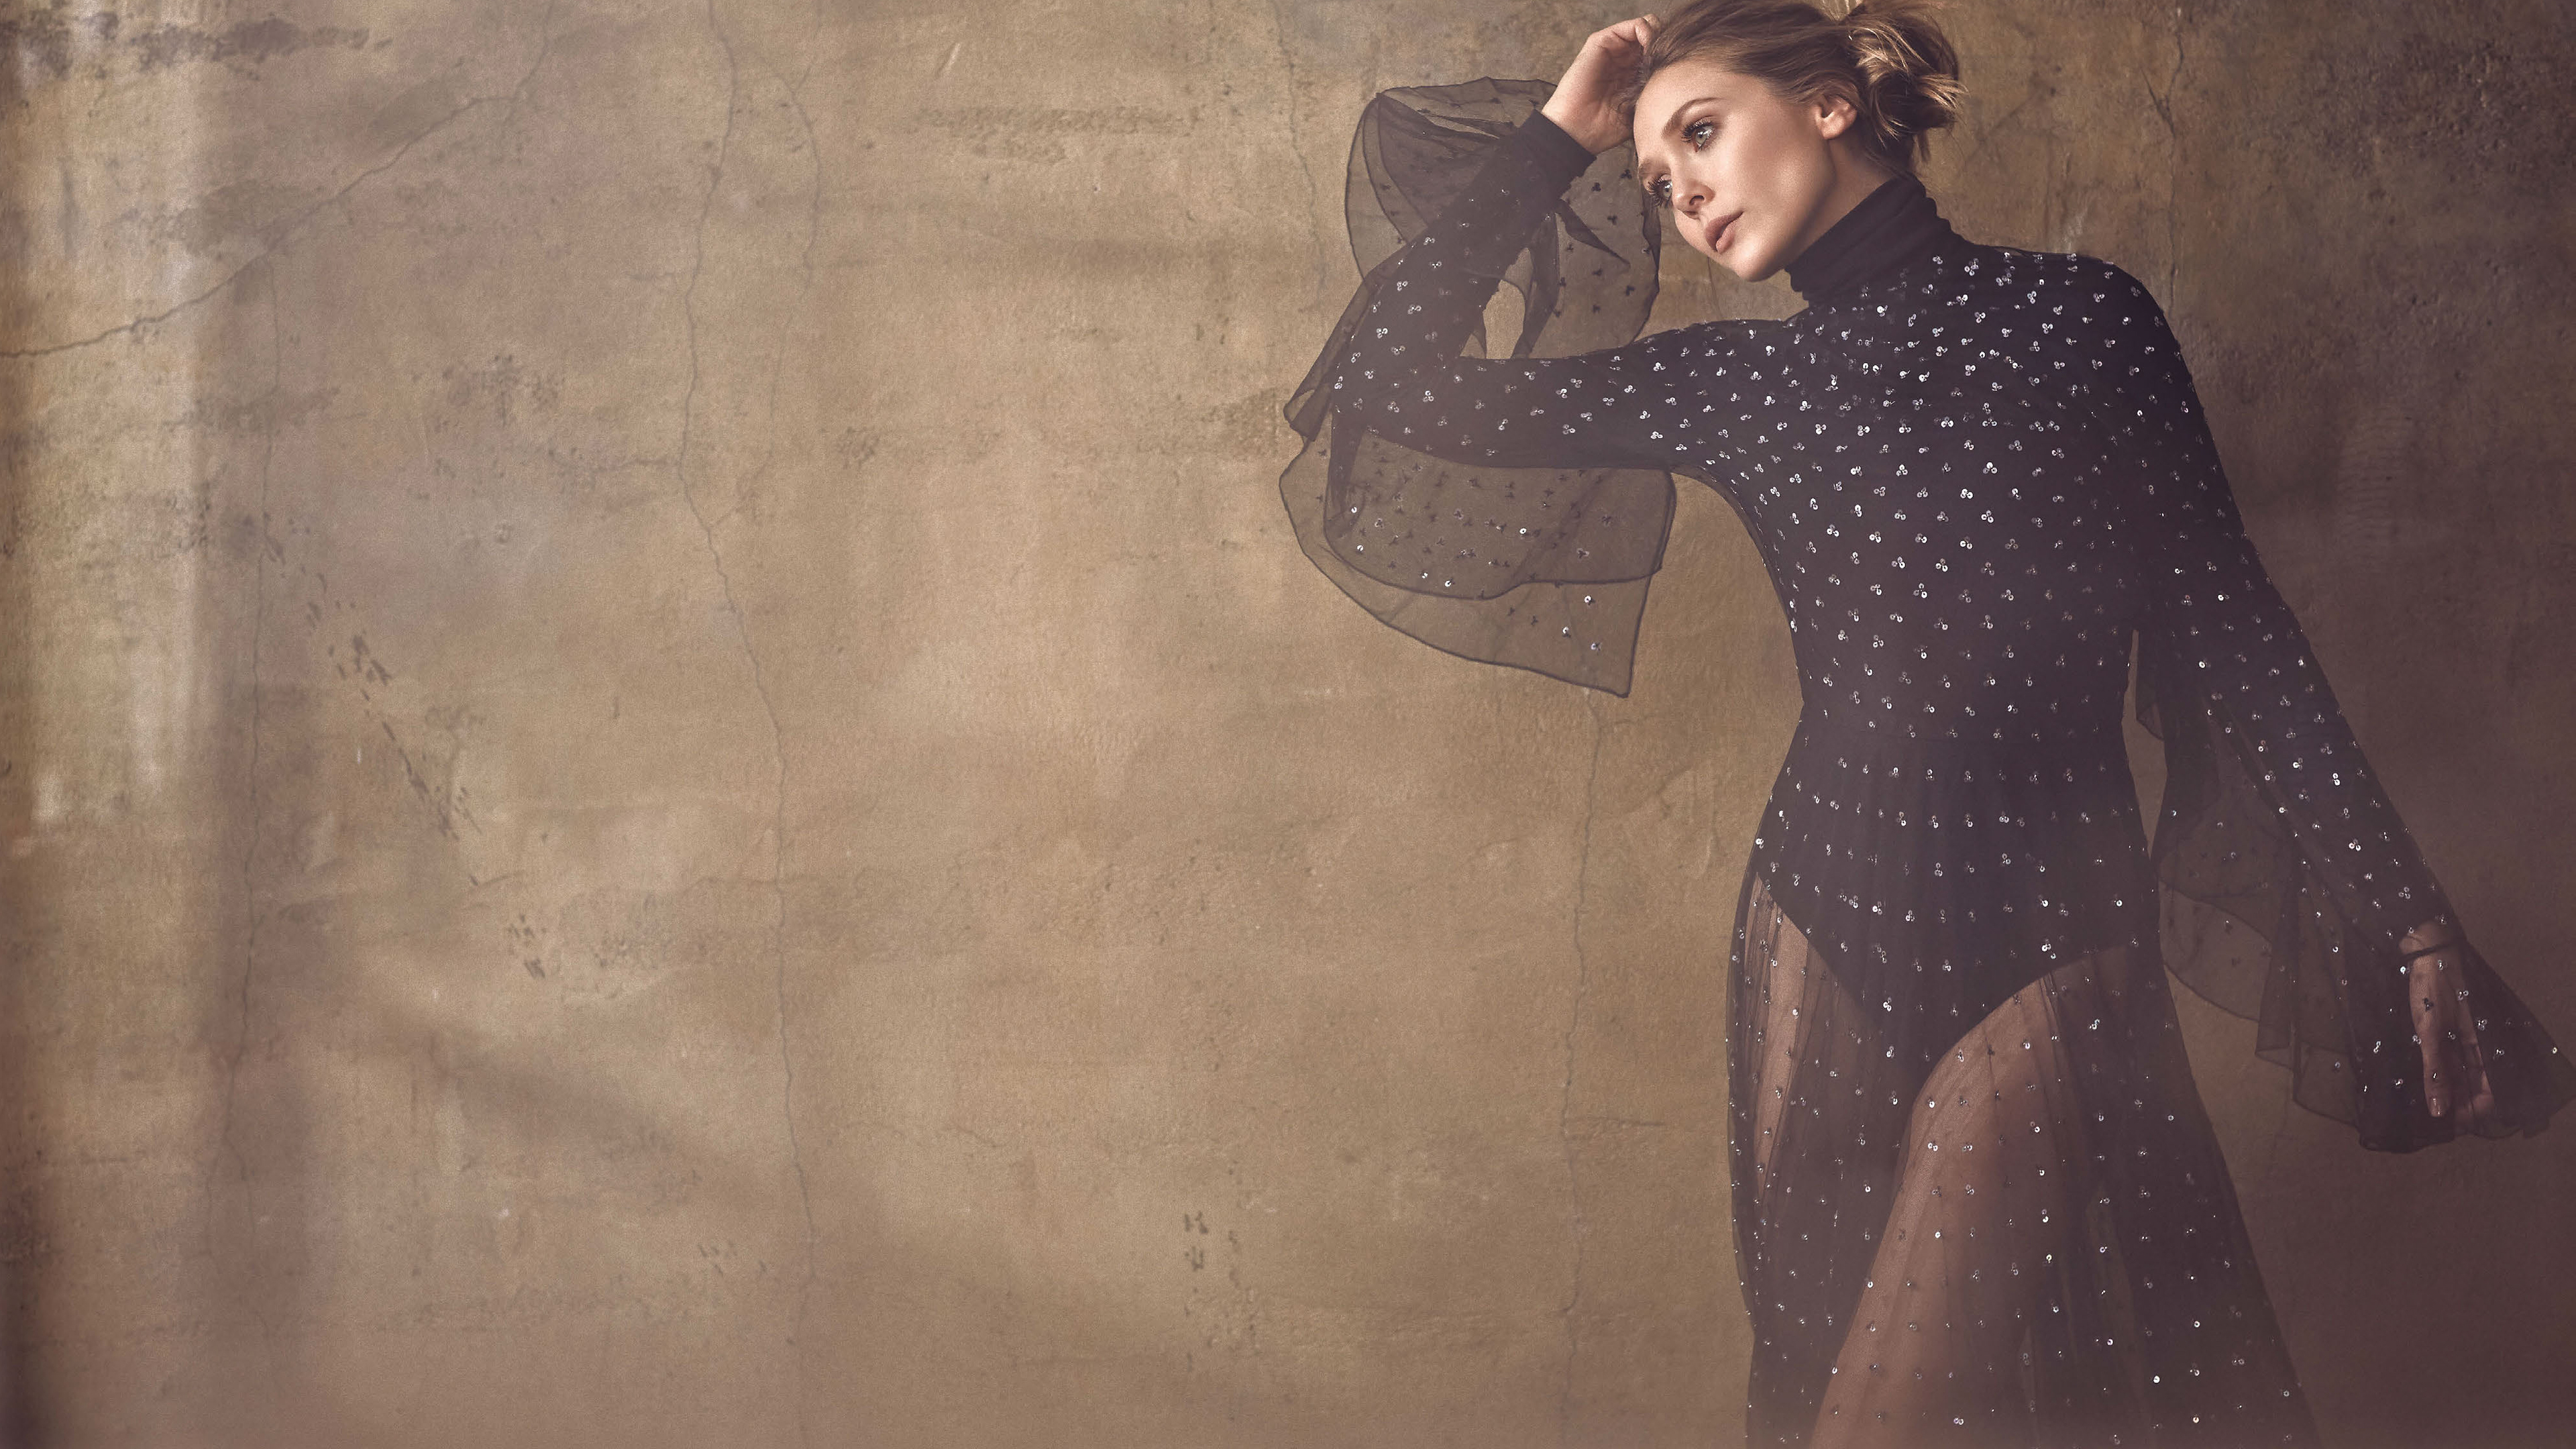 Actress Elizabeth Olsen 2021 Wallpapers